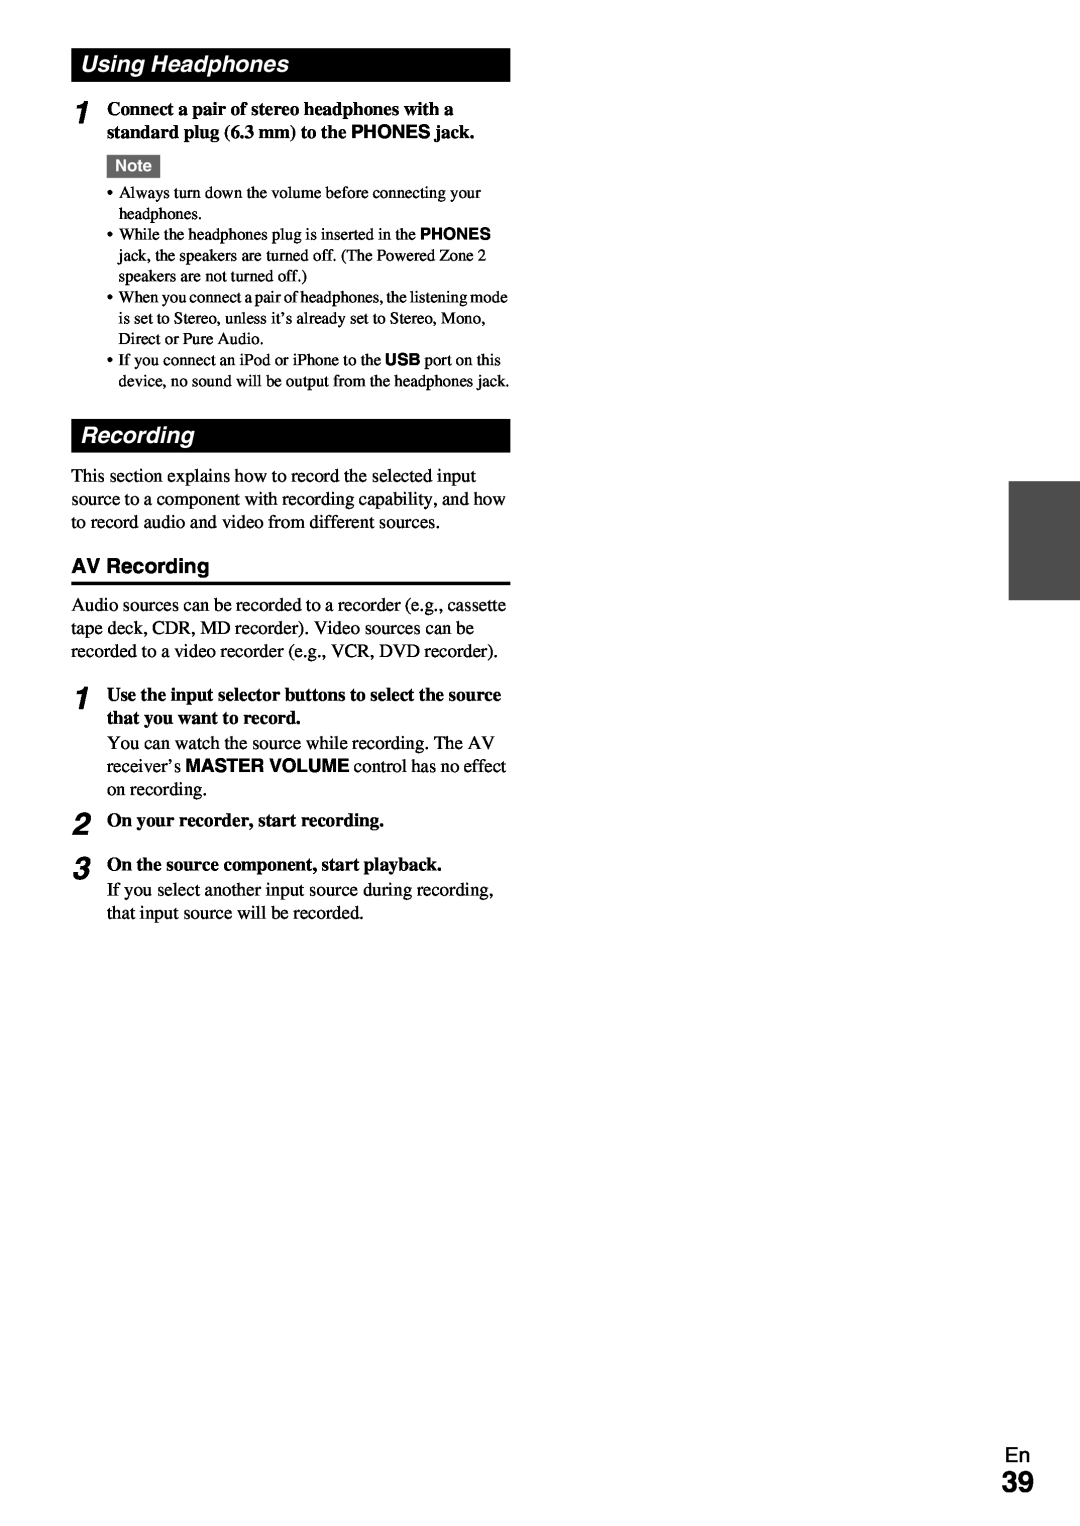 Onkyo TX-NR579 instruction manual 1 2 3, Using Headphones, AV Recording 